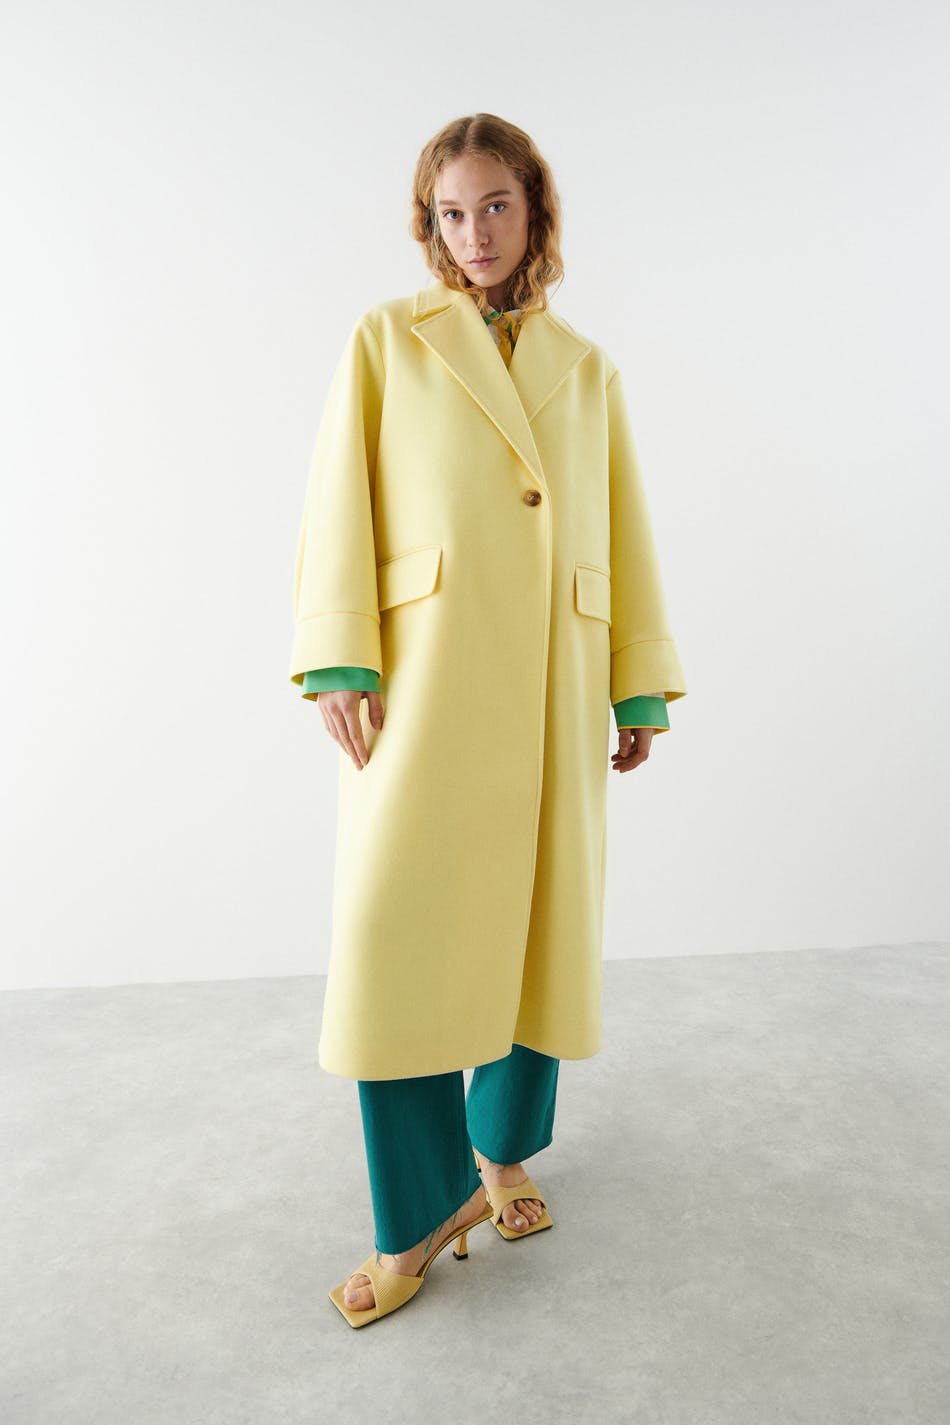 Gina Tricot Daisy coat